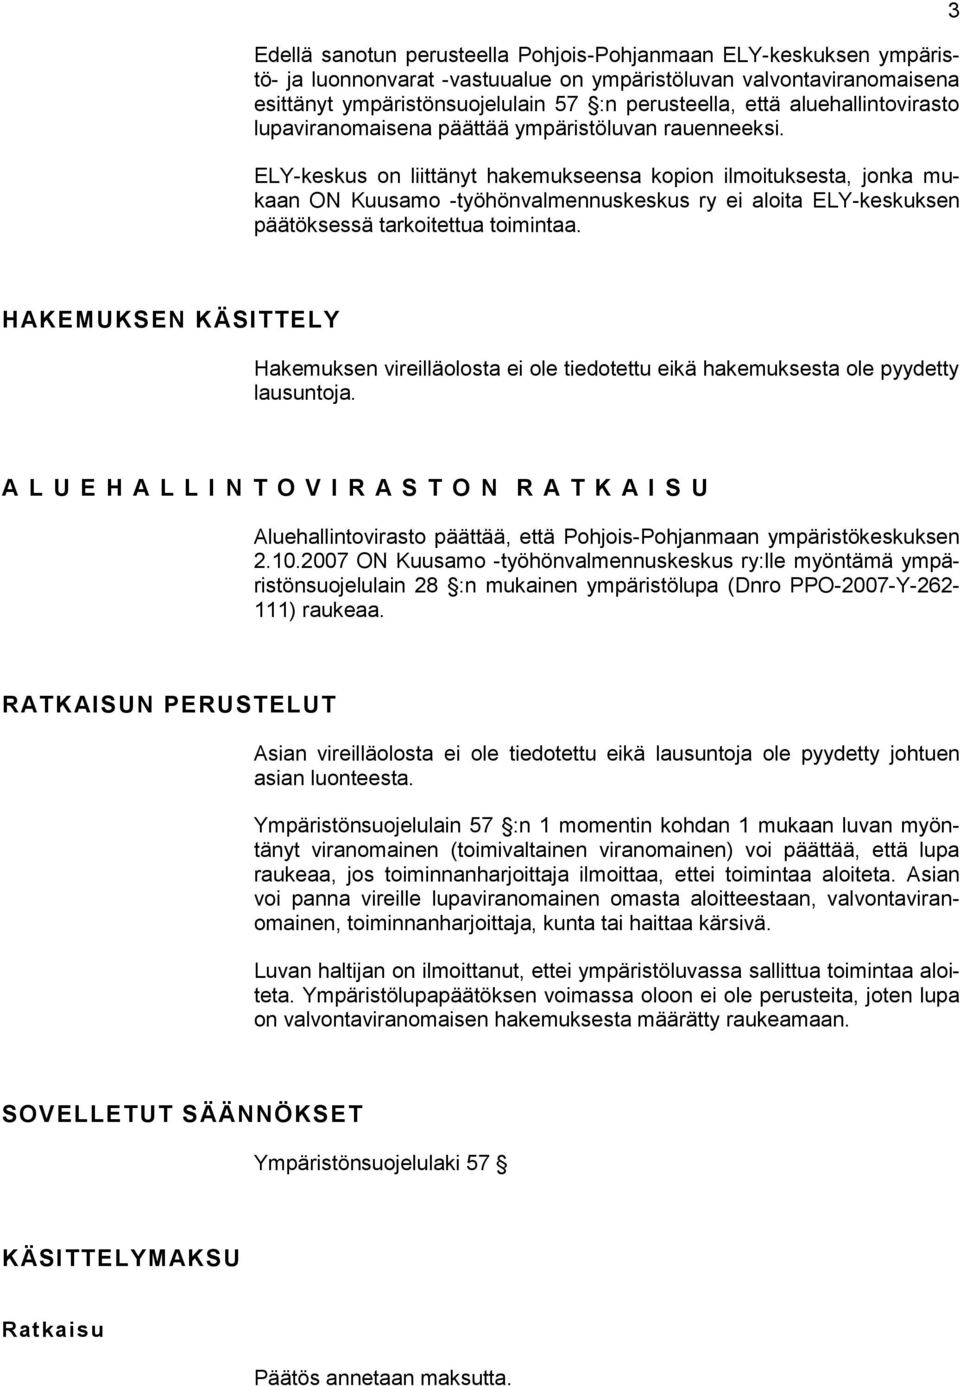 ELY-keskus on liittänyt hakemukseensa kopion ilmoituksesta, jonka mukaan ON Kuusamo -työhönvalmennuskeskus ry ei aloita ELY-keskuksen päätöksessä tarkoitettua toimintaa.